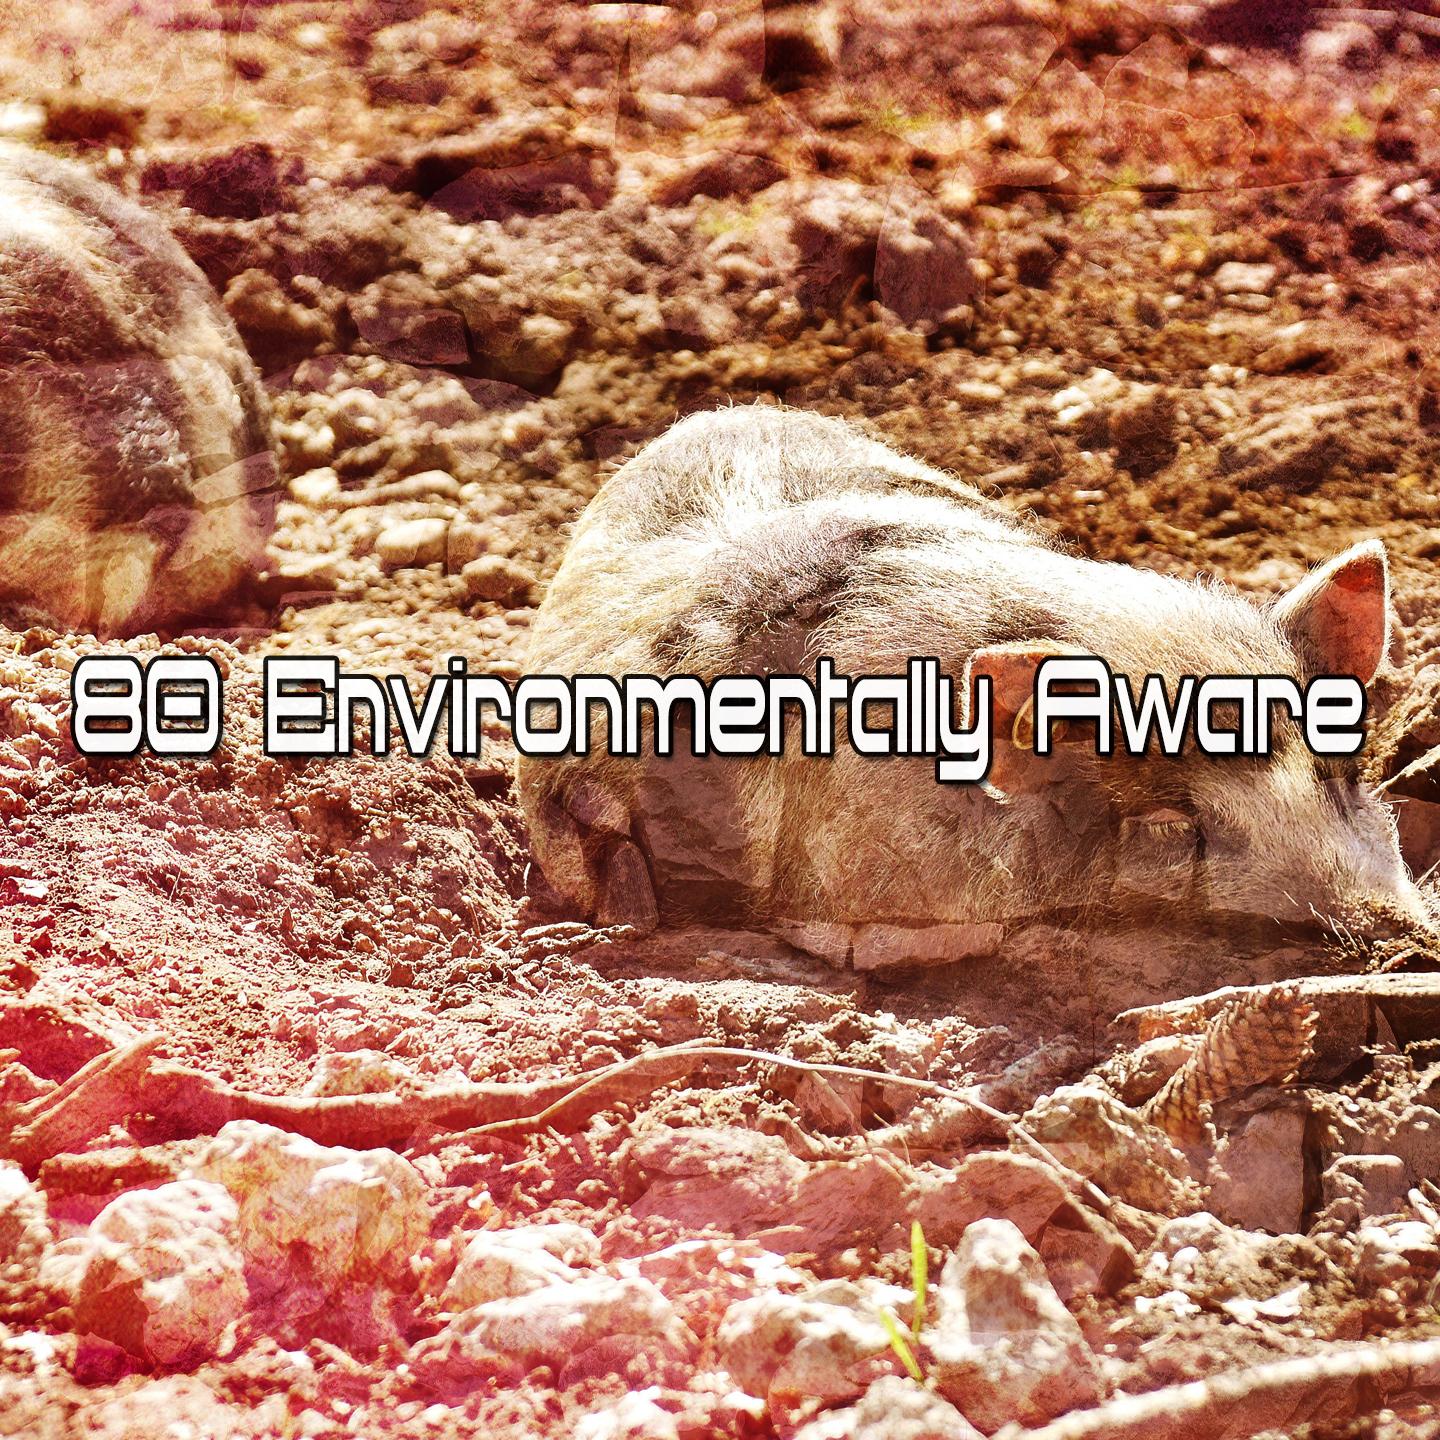 80 Environmentally Aware